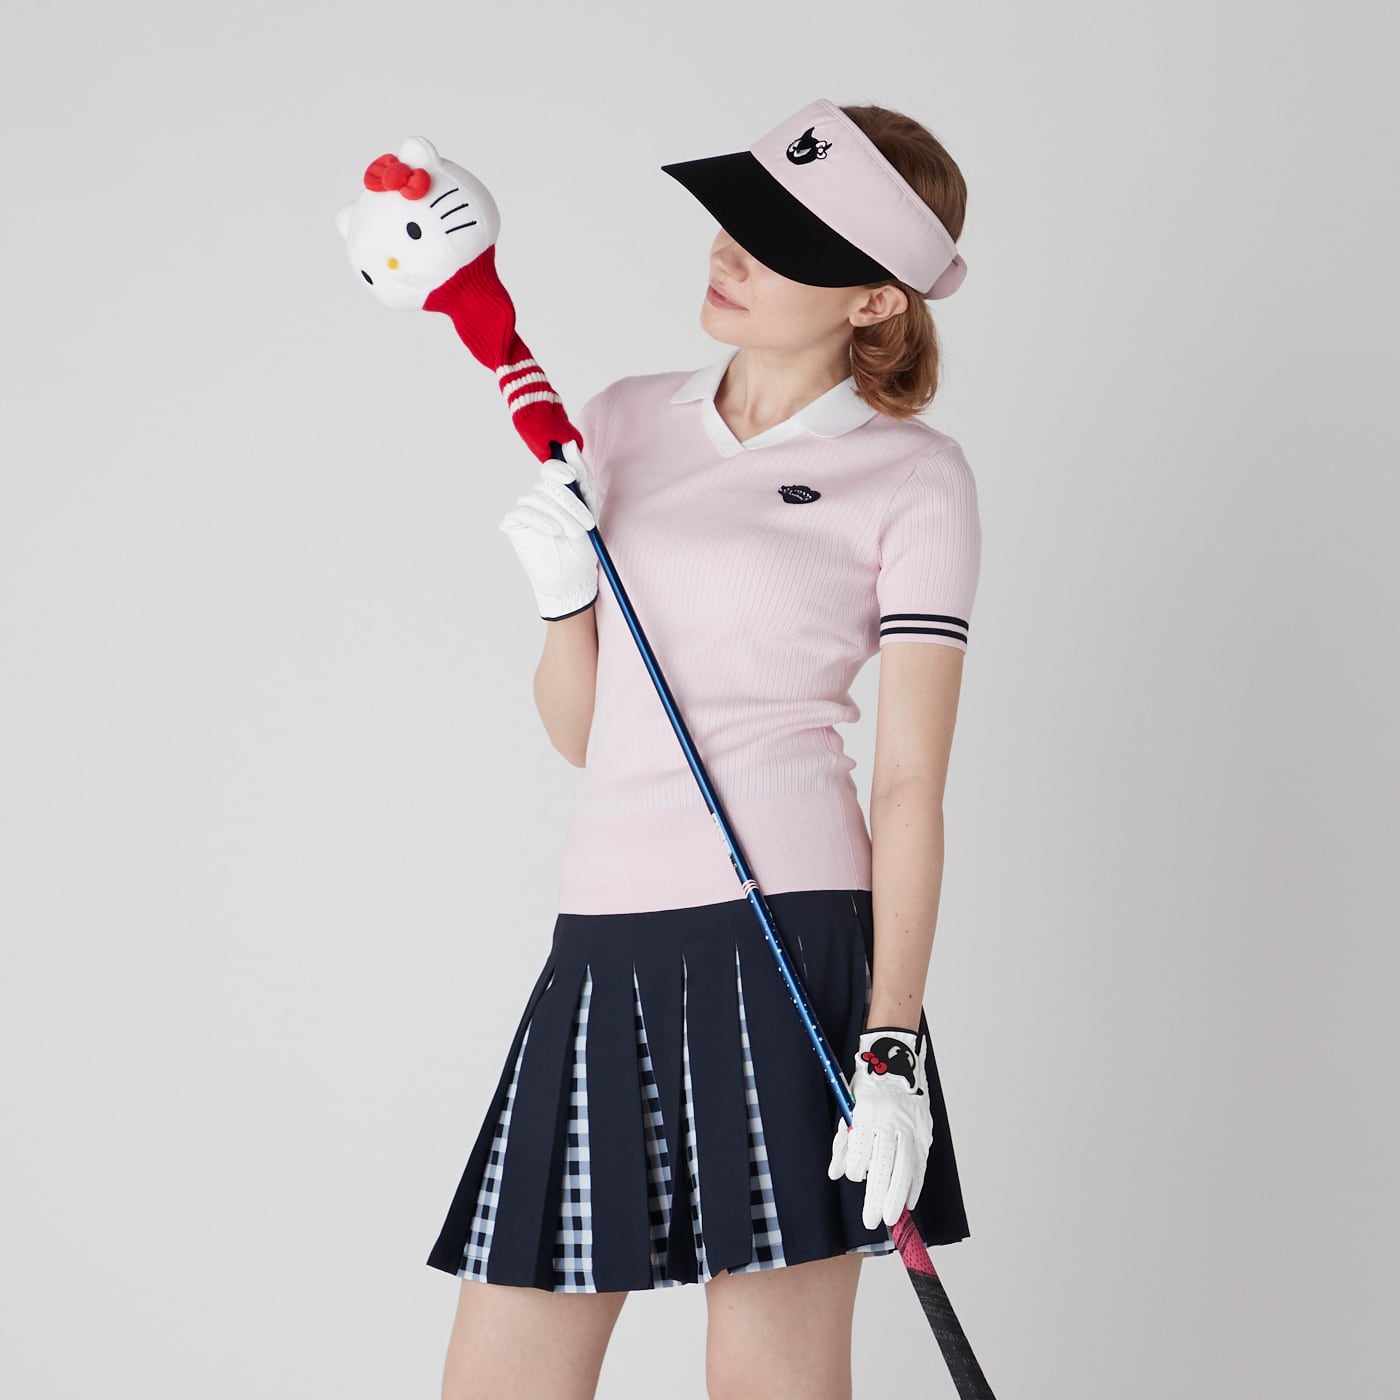 新作安い WAAC GOLF ゴルフ 韓国 シャツ ダウン インナーの通販 by アリエル's shop｜ラクマ